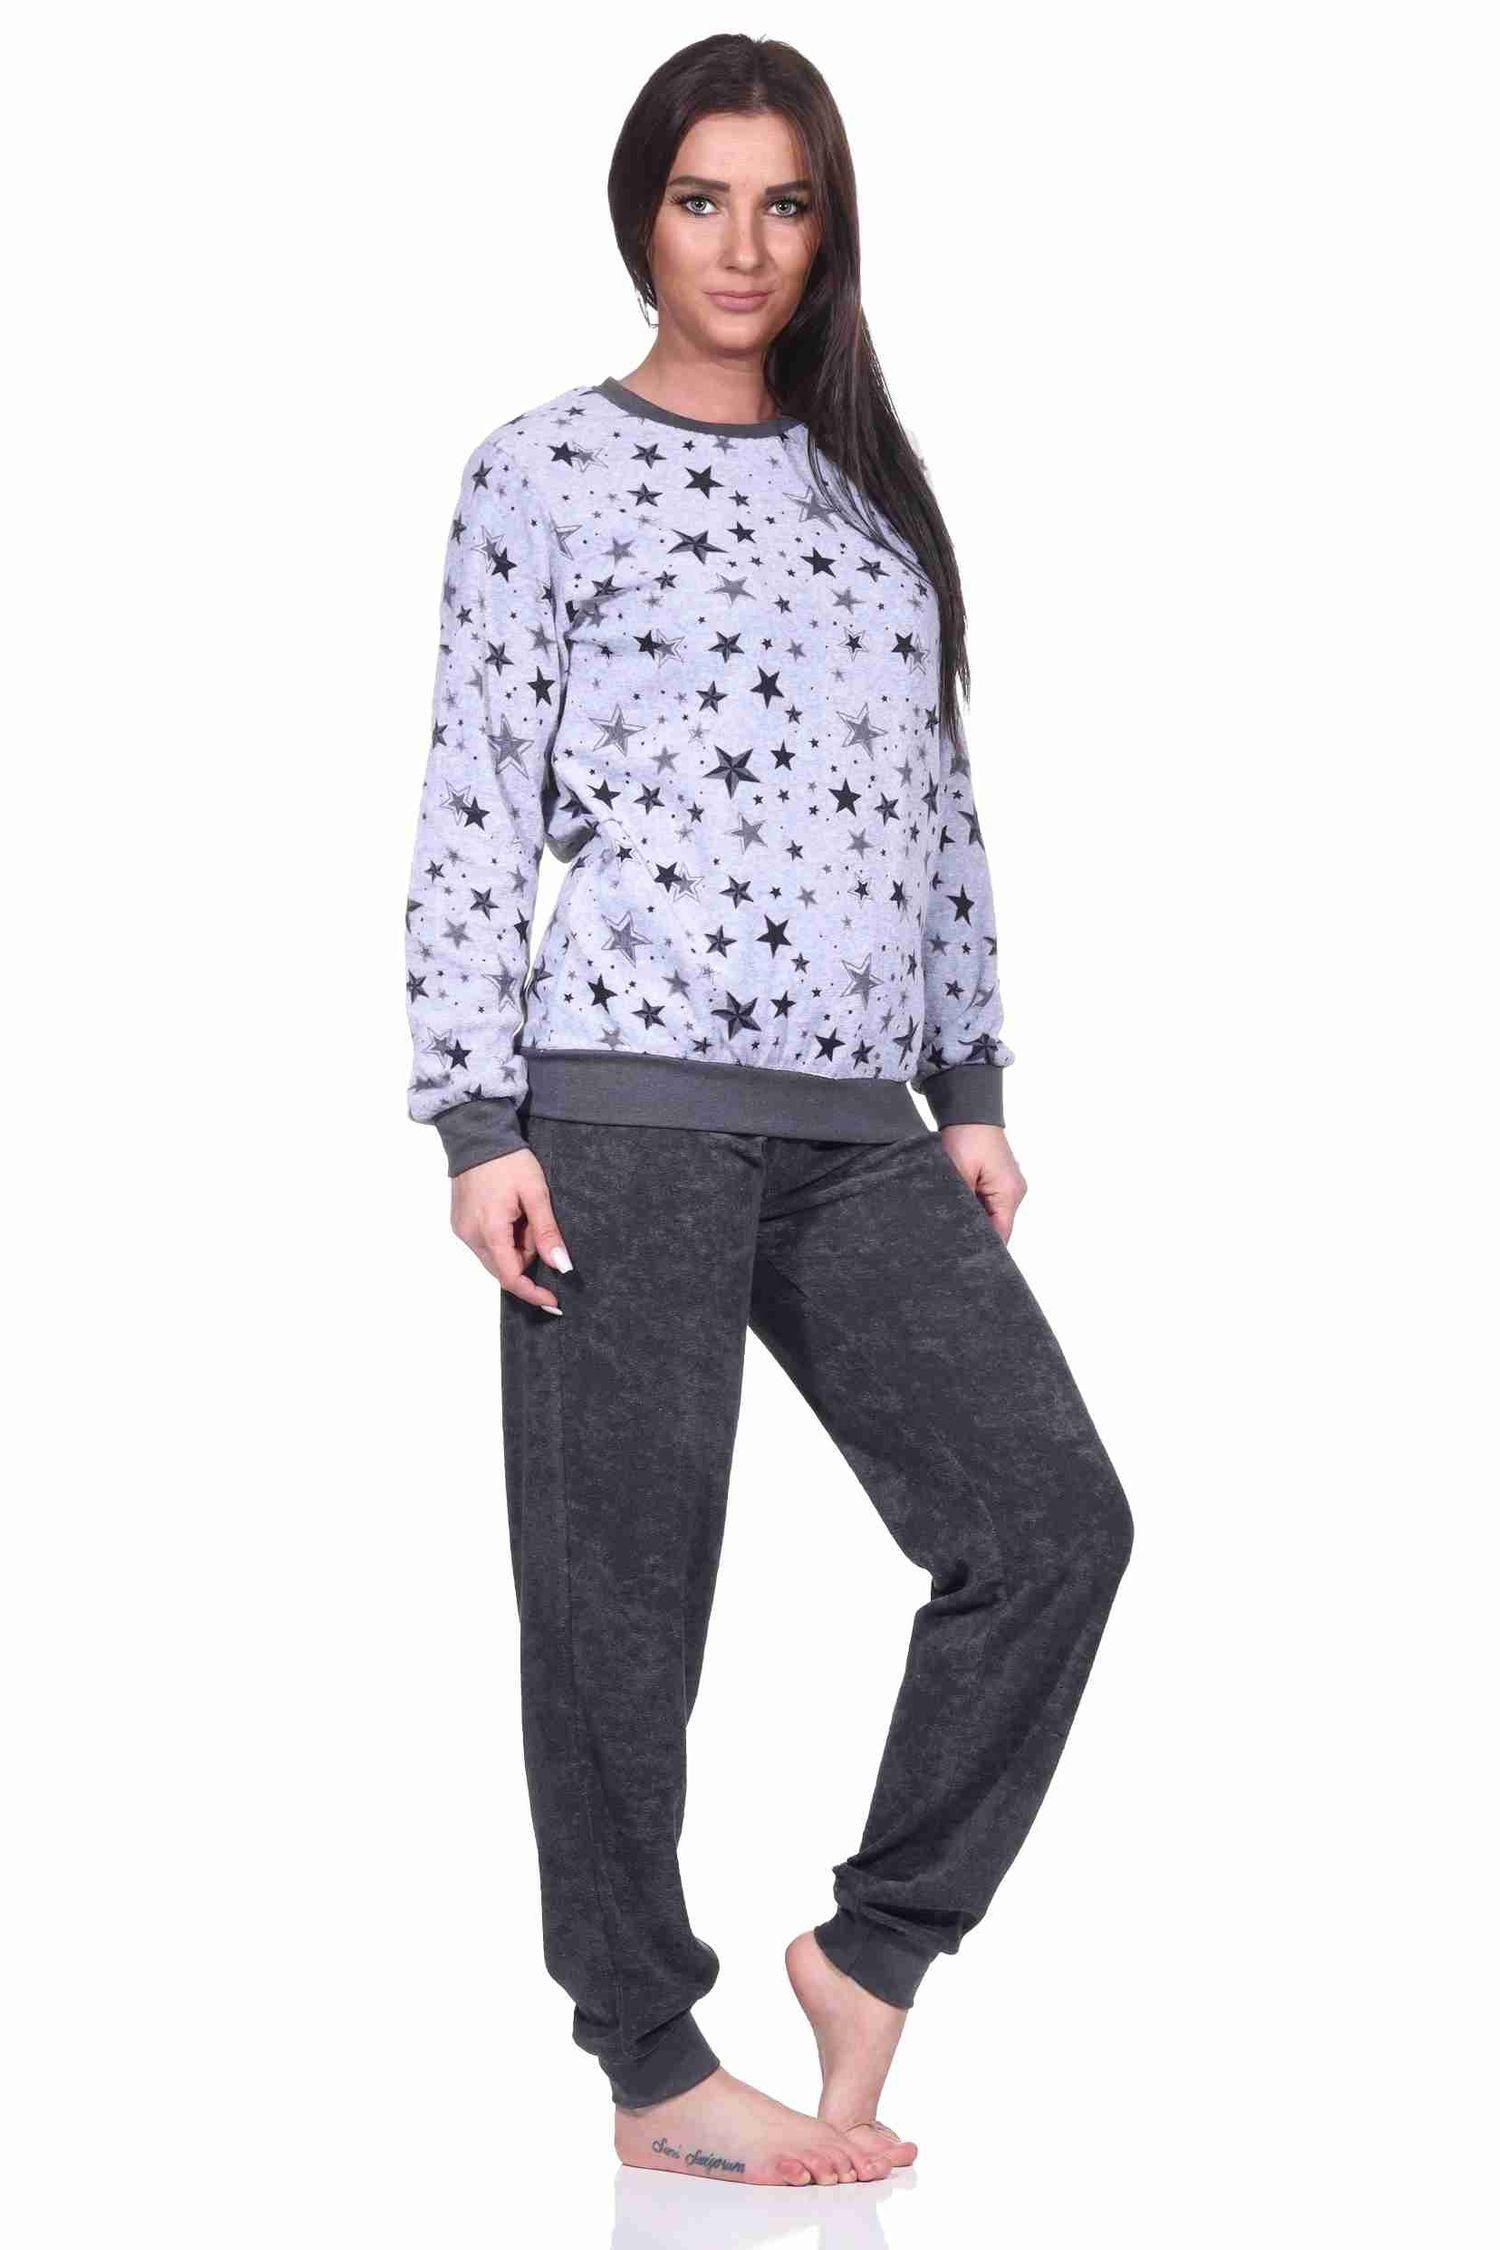 Pyjama Bündchen Frottee mit grau-melange Damen Sterne Schlafanzug Design in edlen Normann